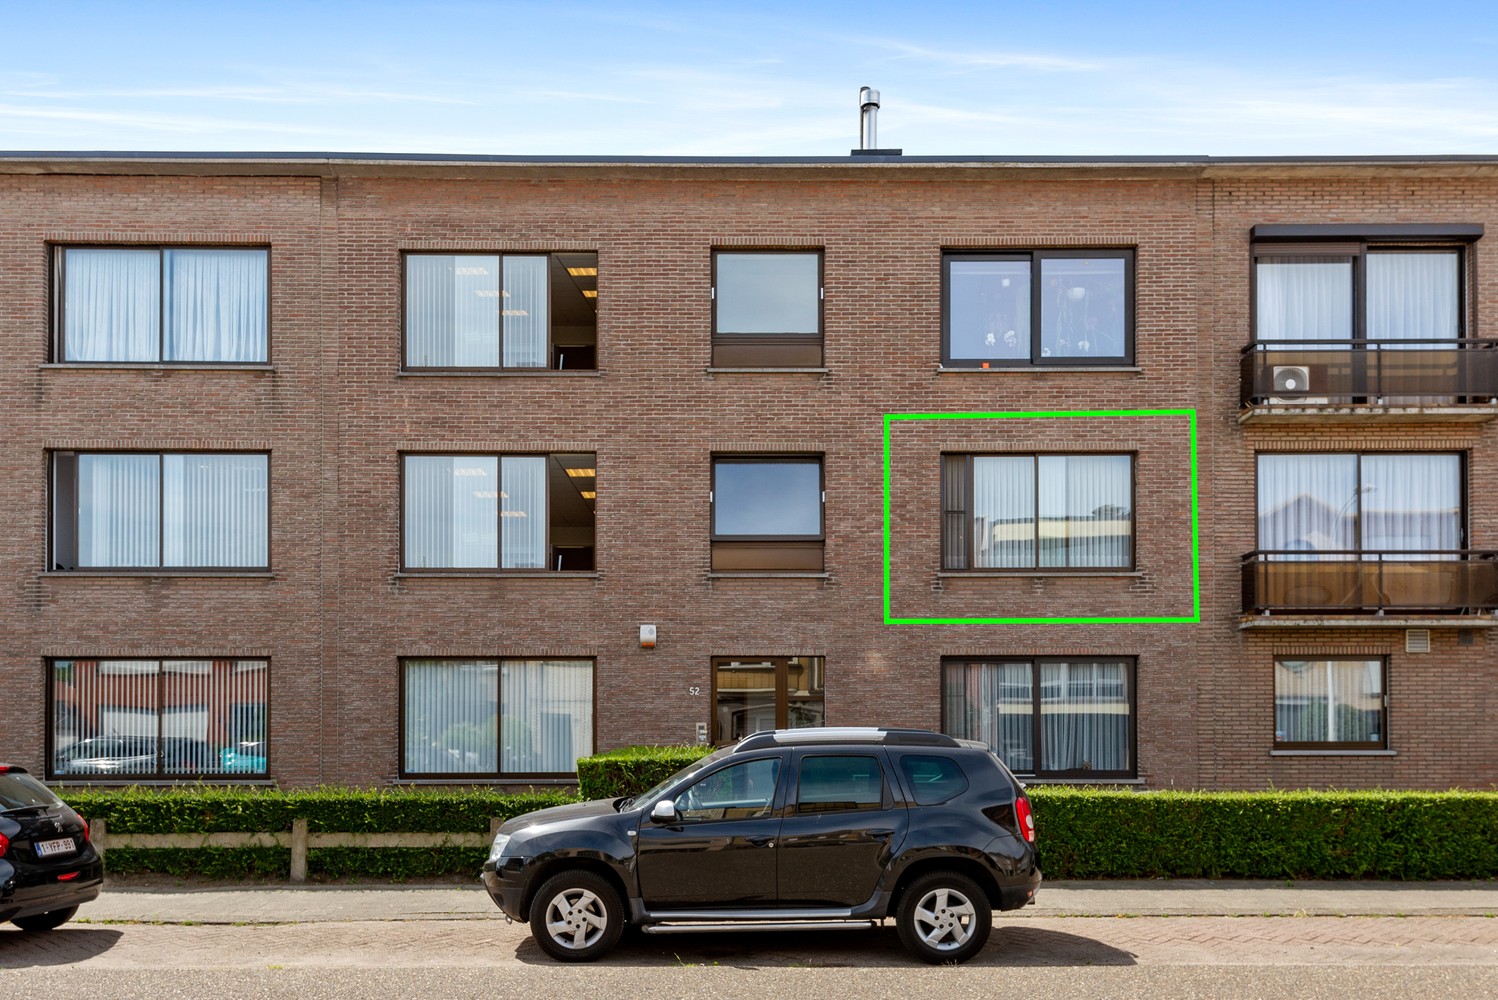 Appartement met 3 slaapkamers, terras en garage in Borsbeek! afbeelding 15